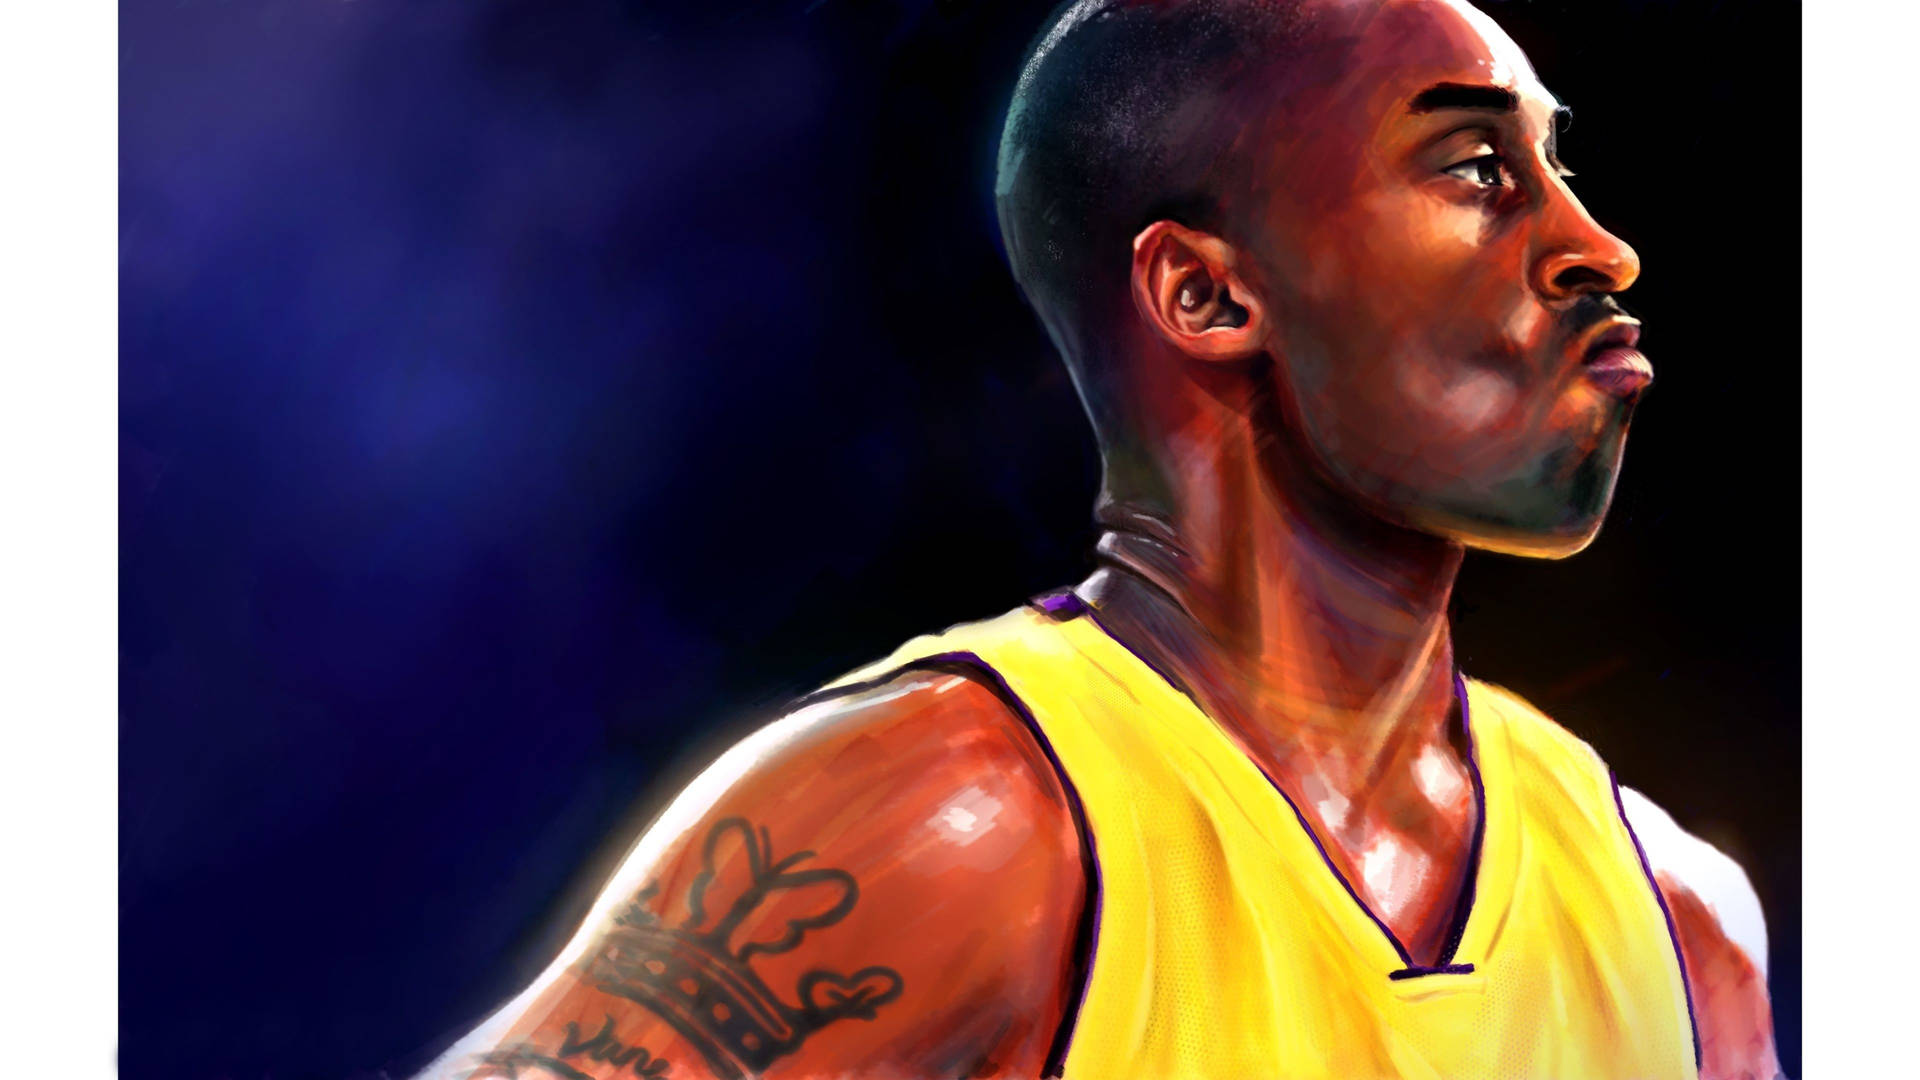 Kobe Bryant Digital Painting 4k